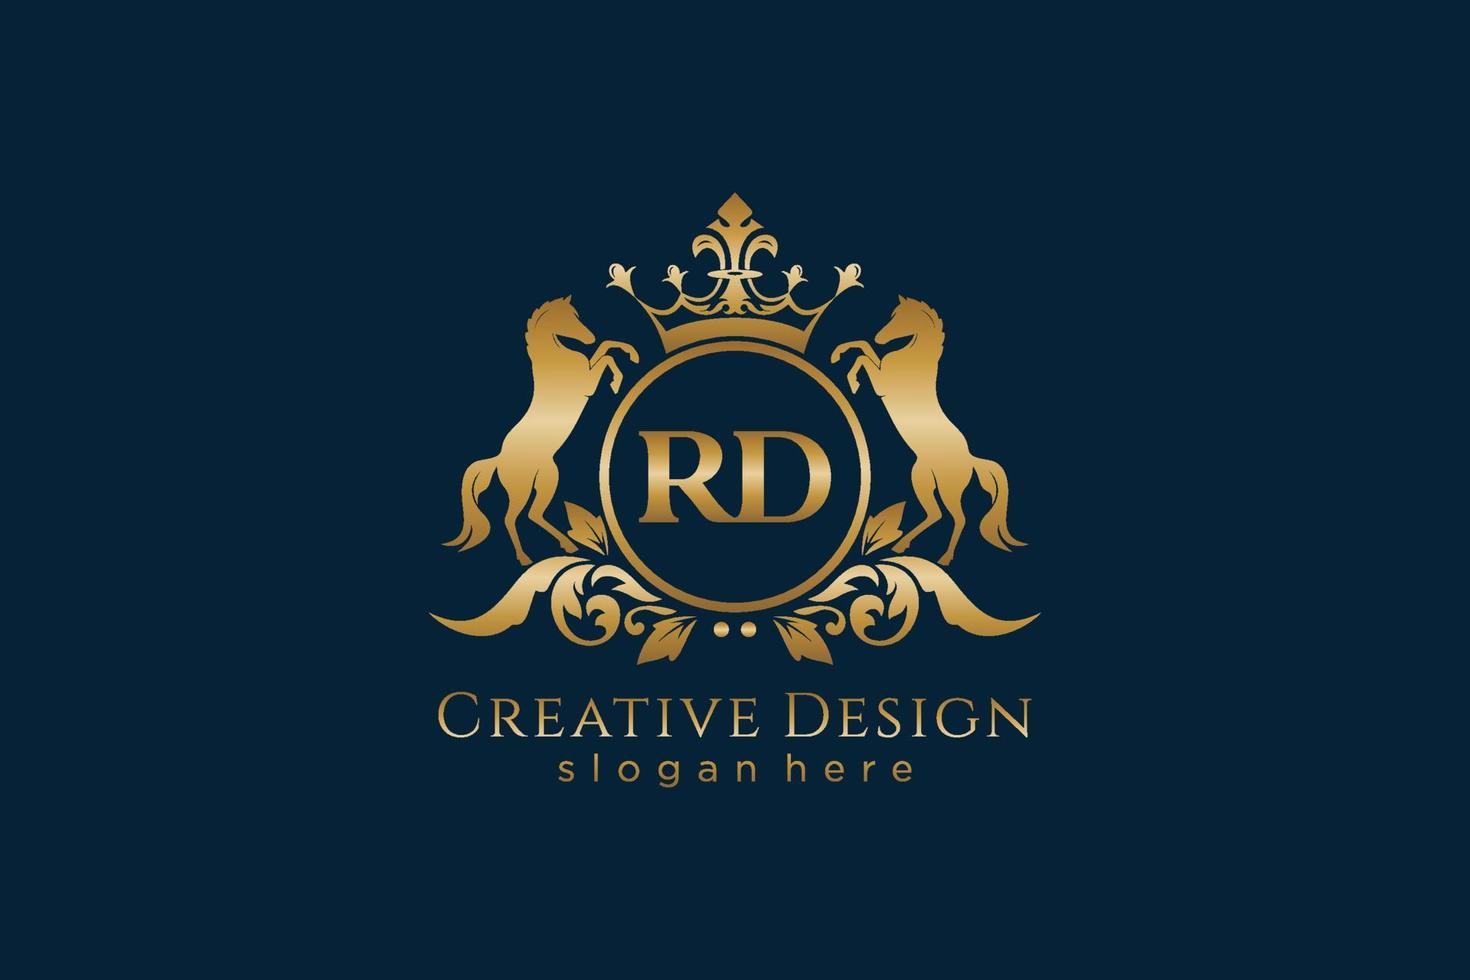 crista dourada retrô inicial rd com círculo e dois cavalos, modelo de crachá com pergaminhos e coroa real - perfeito para projetos de marca luxuosos vetor